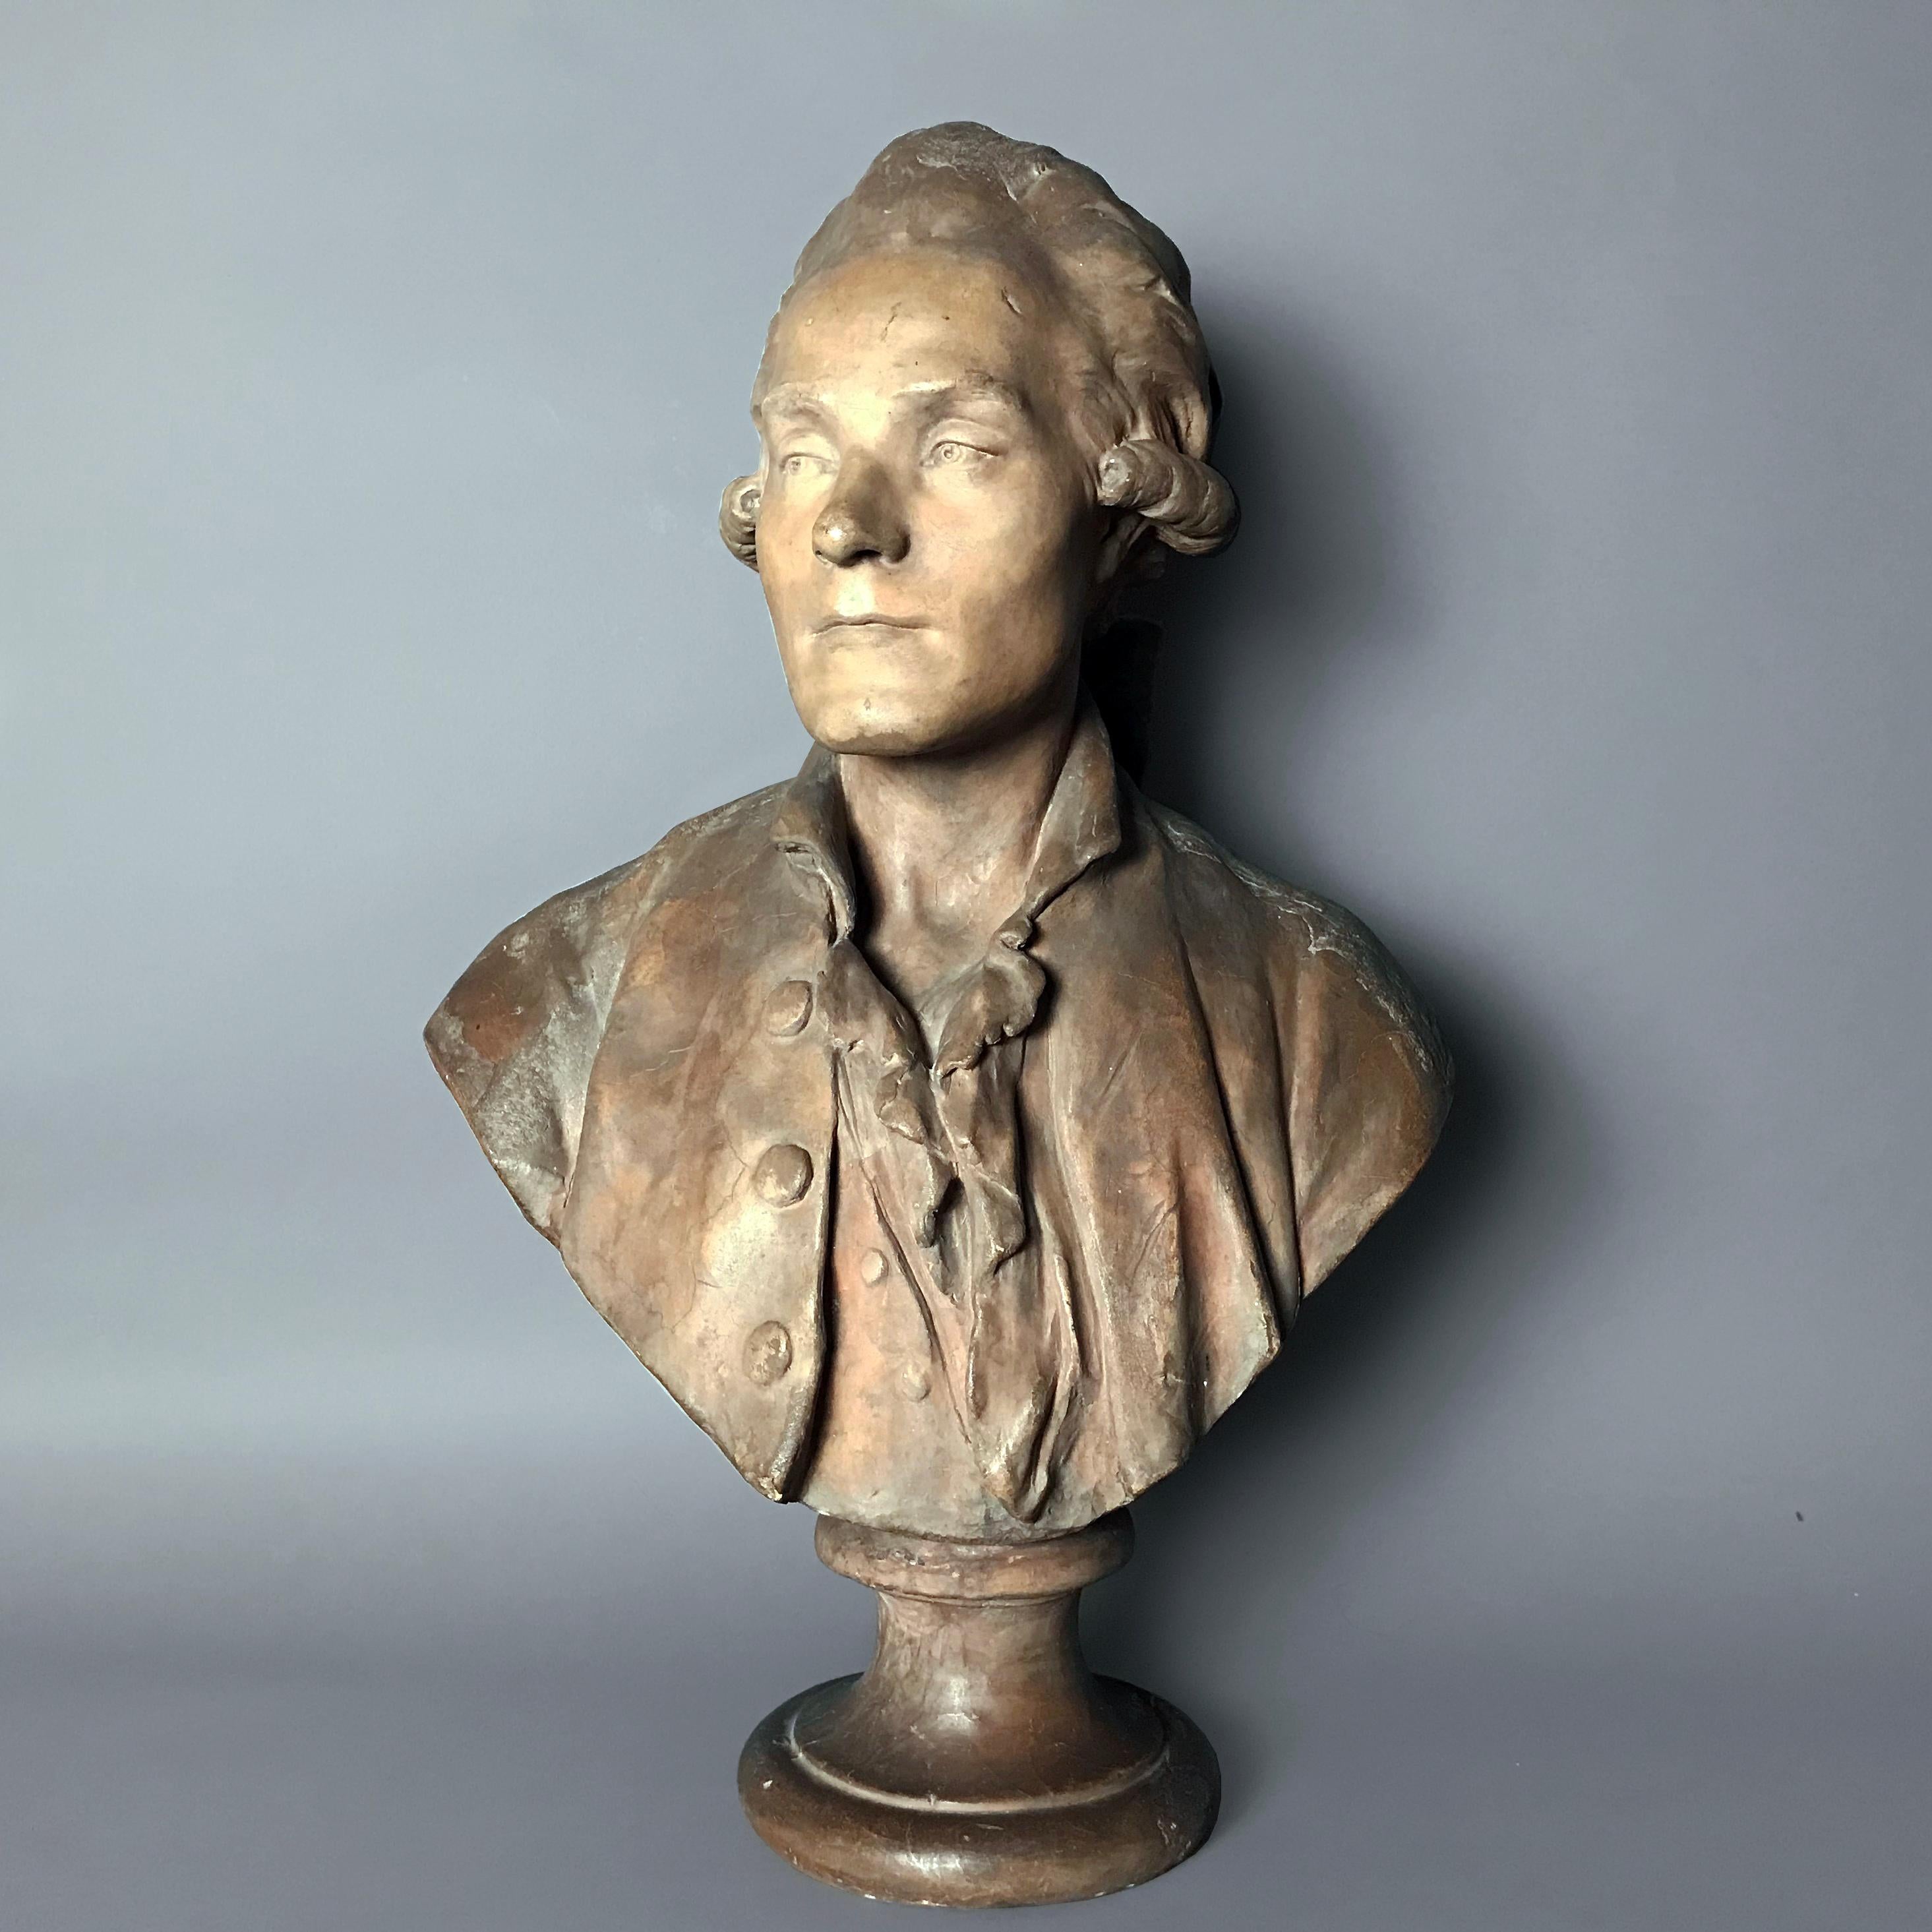 D'après un modèle attribué à Jean Antoine Houdon, peut-être Nicolas Joseph Laurent Gilbert (1750 - 1780), poète.

Superbement sculptée dans un manteau et une chemise à volants posée sur un socle cintré. L'arrière du buste montre les empreintes du